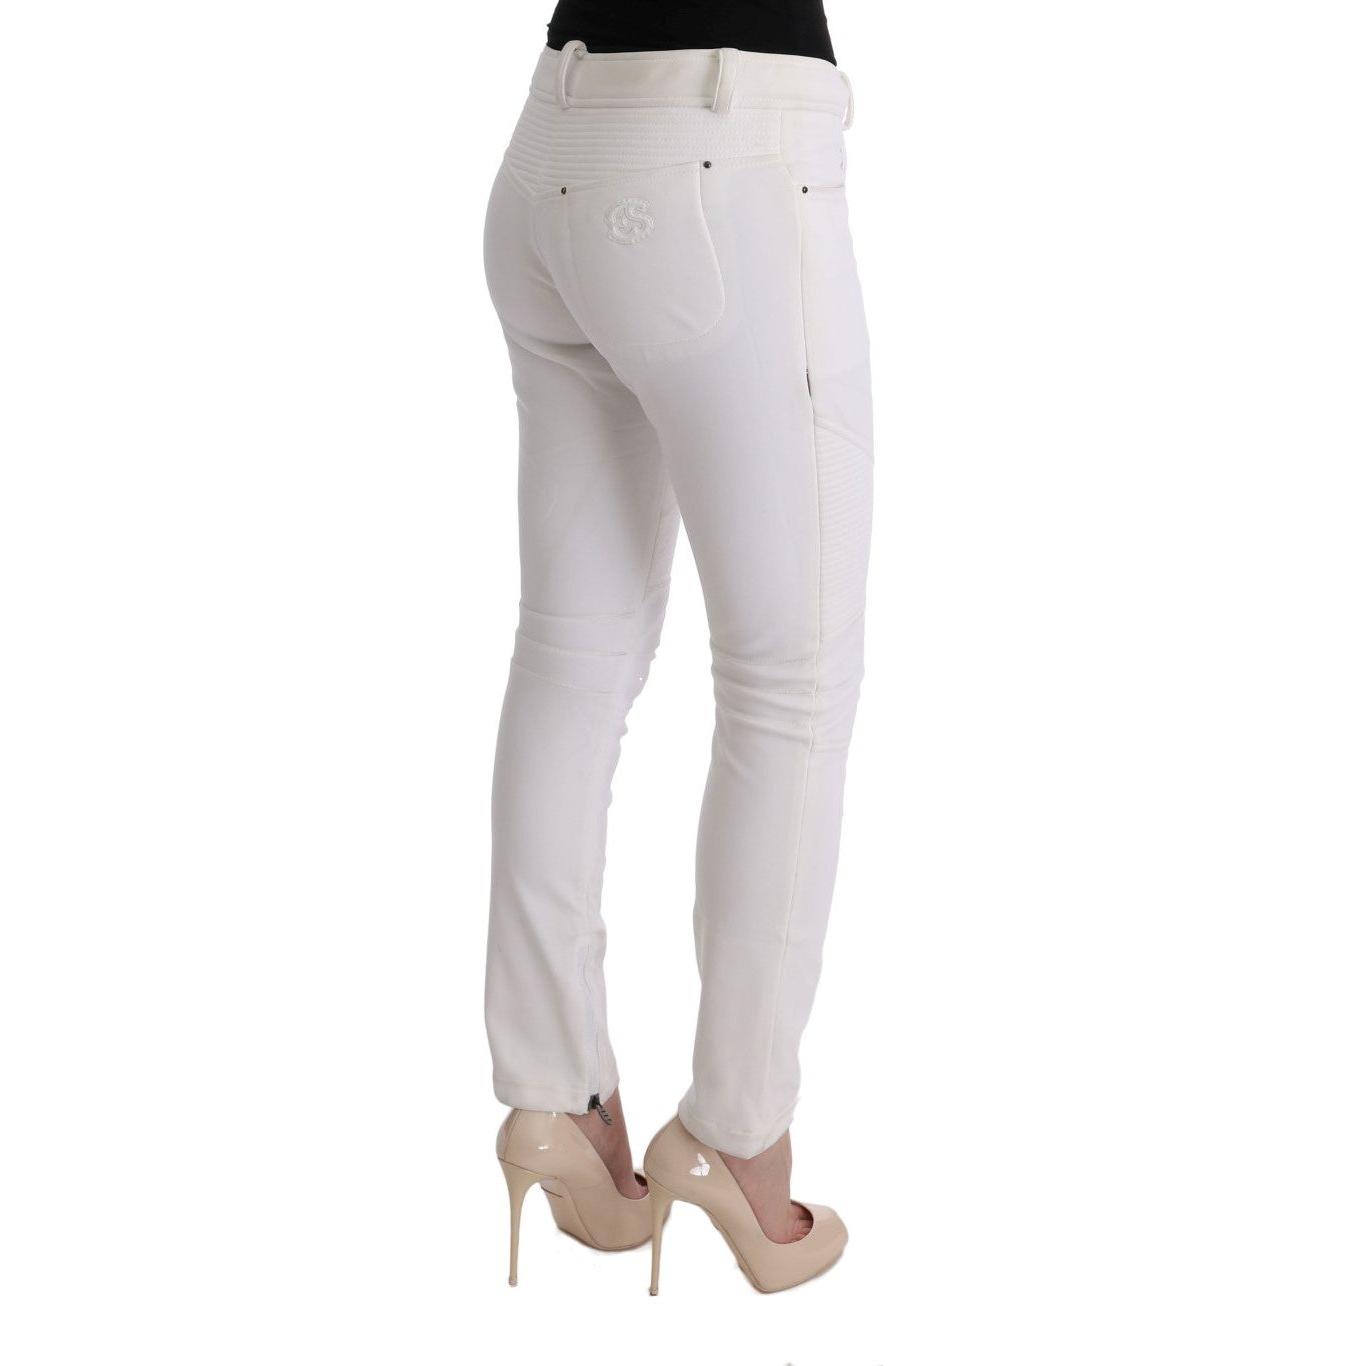 Ermanno Scervino Chic White Slim Fit Cotton Pants white-cotton-slim-fit-casual-pants-1 449212-white-cotton-slim-fit-casual-pants-2-3.jpg